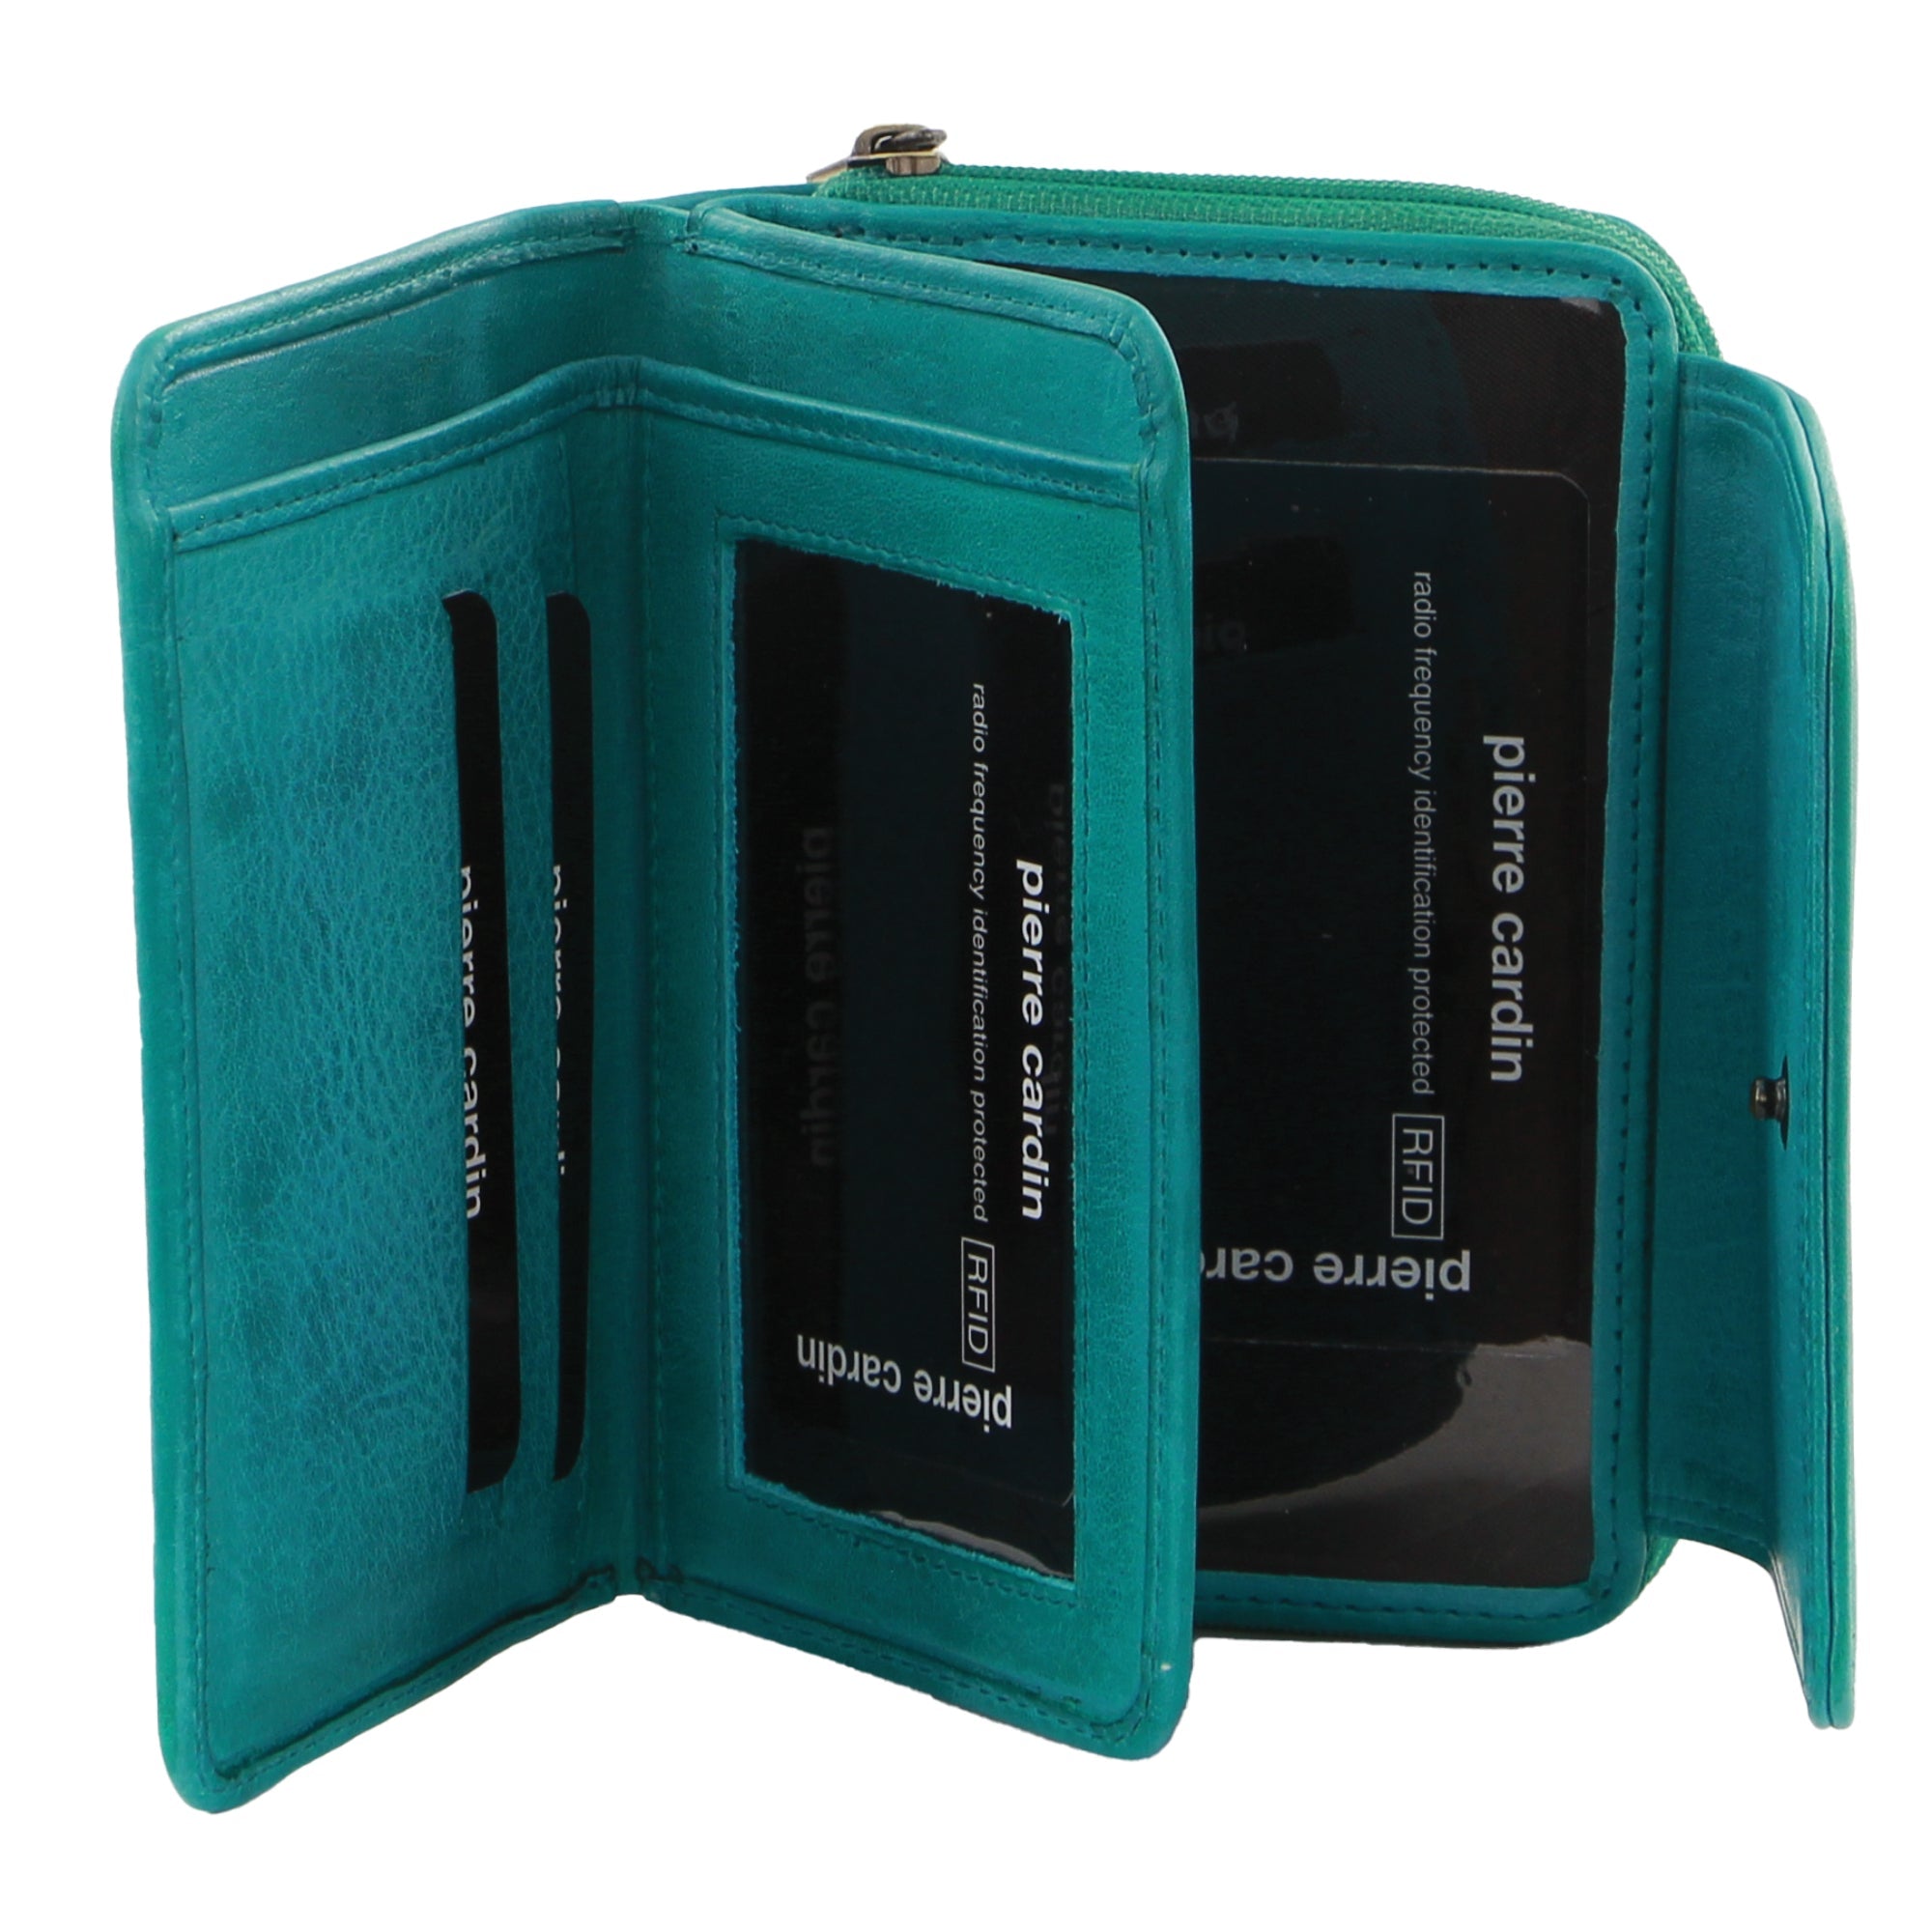 Pierre Cardin Women's Leather Compact Bi-Fold Tab Wallet in Turquoise